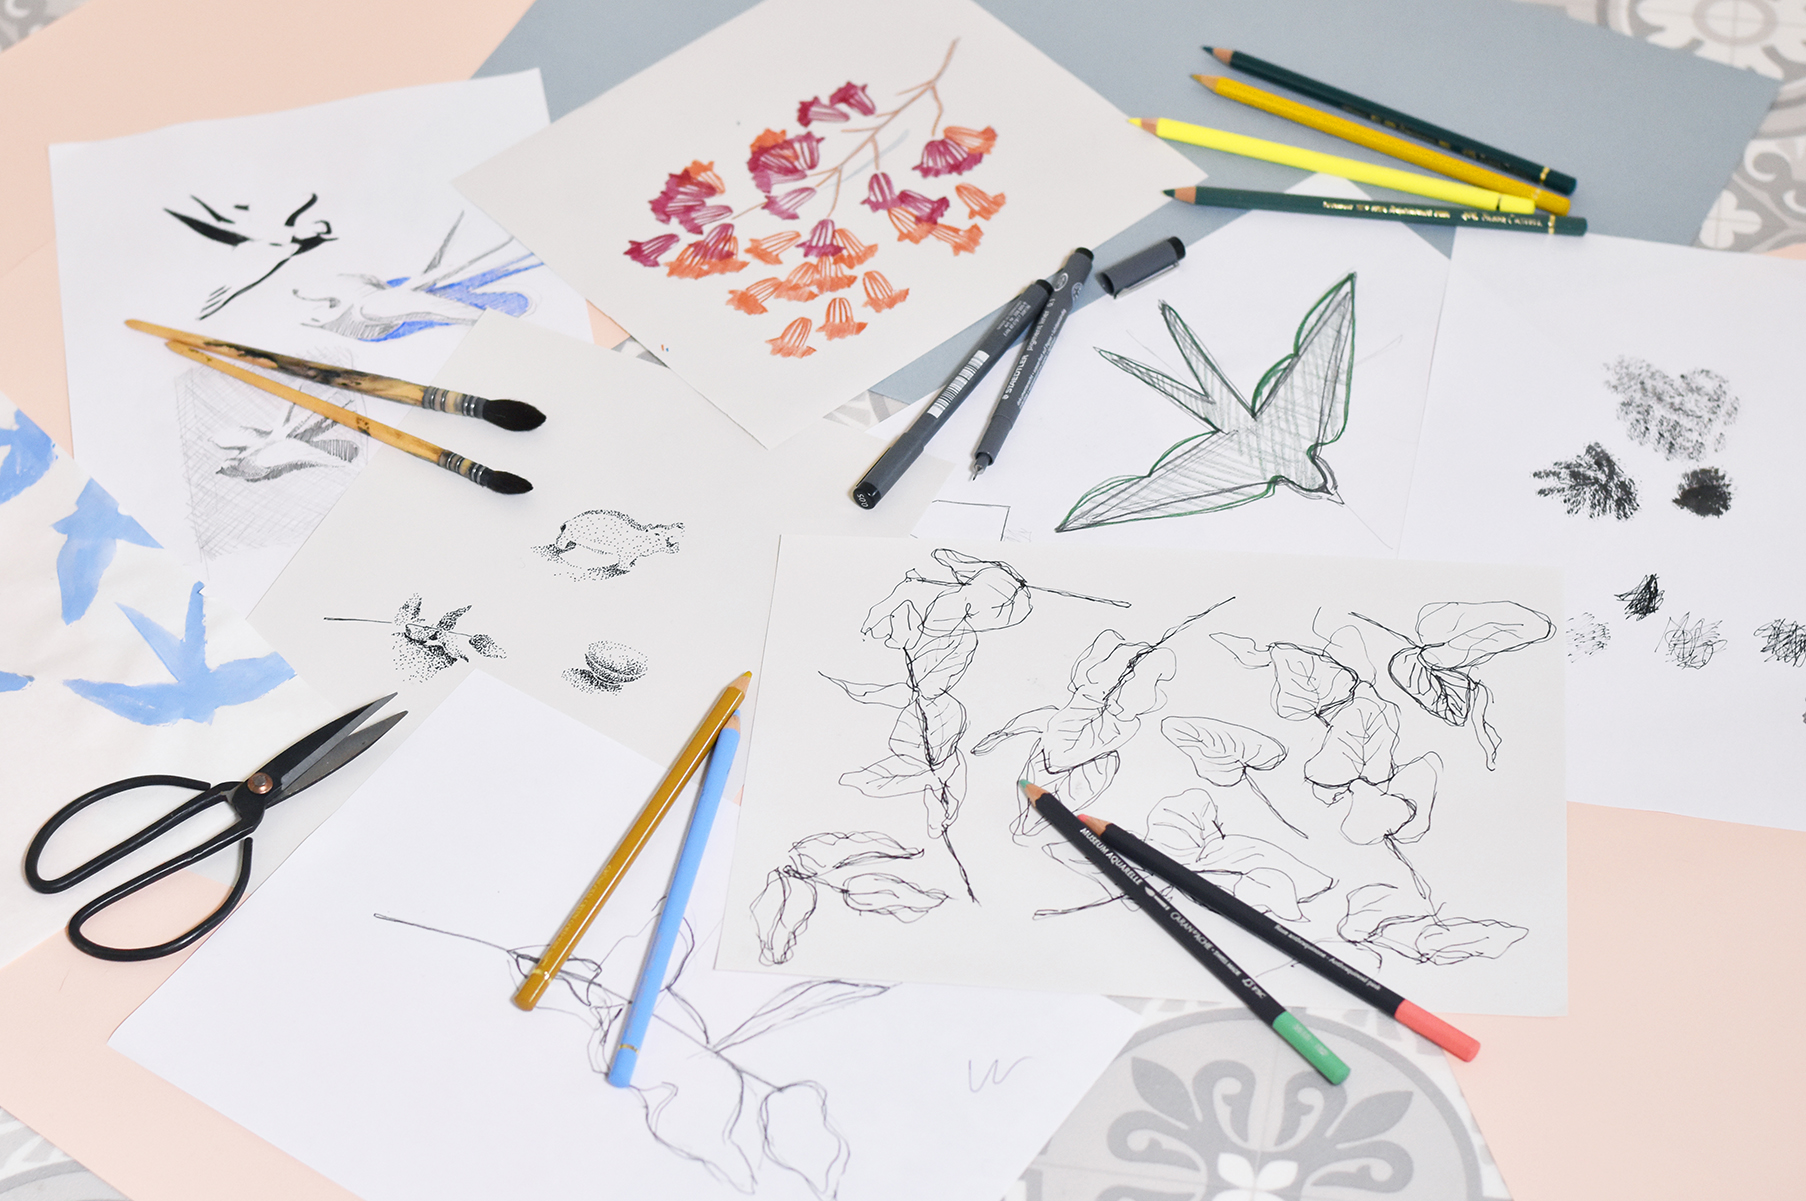 Apprendre à dessiner : Le papier, kesako ?